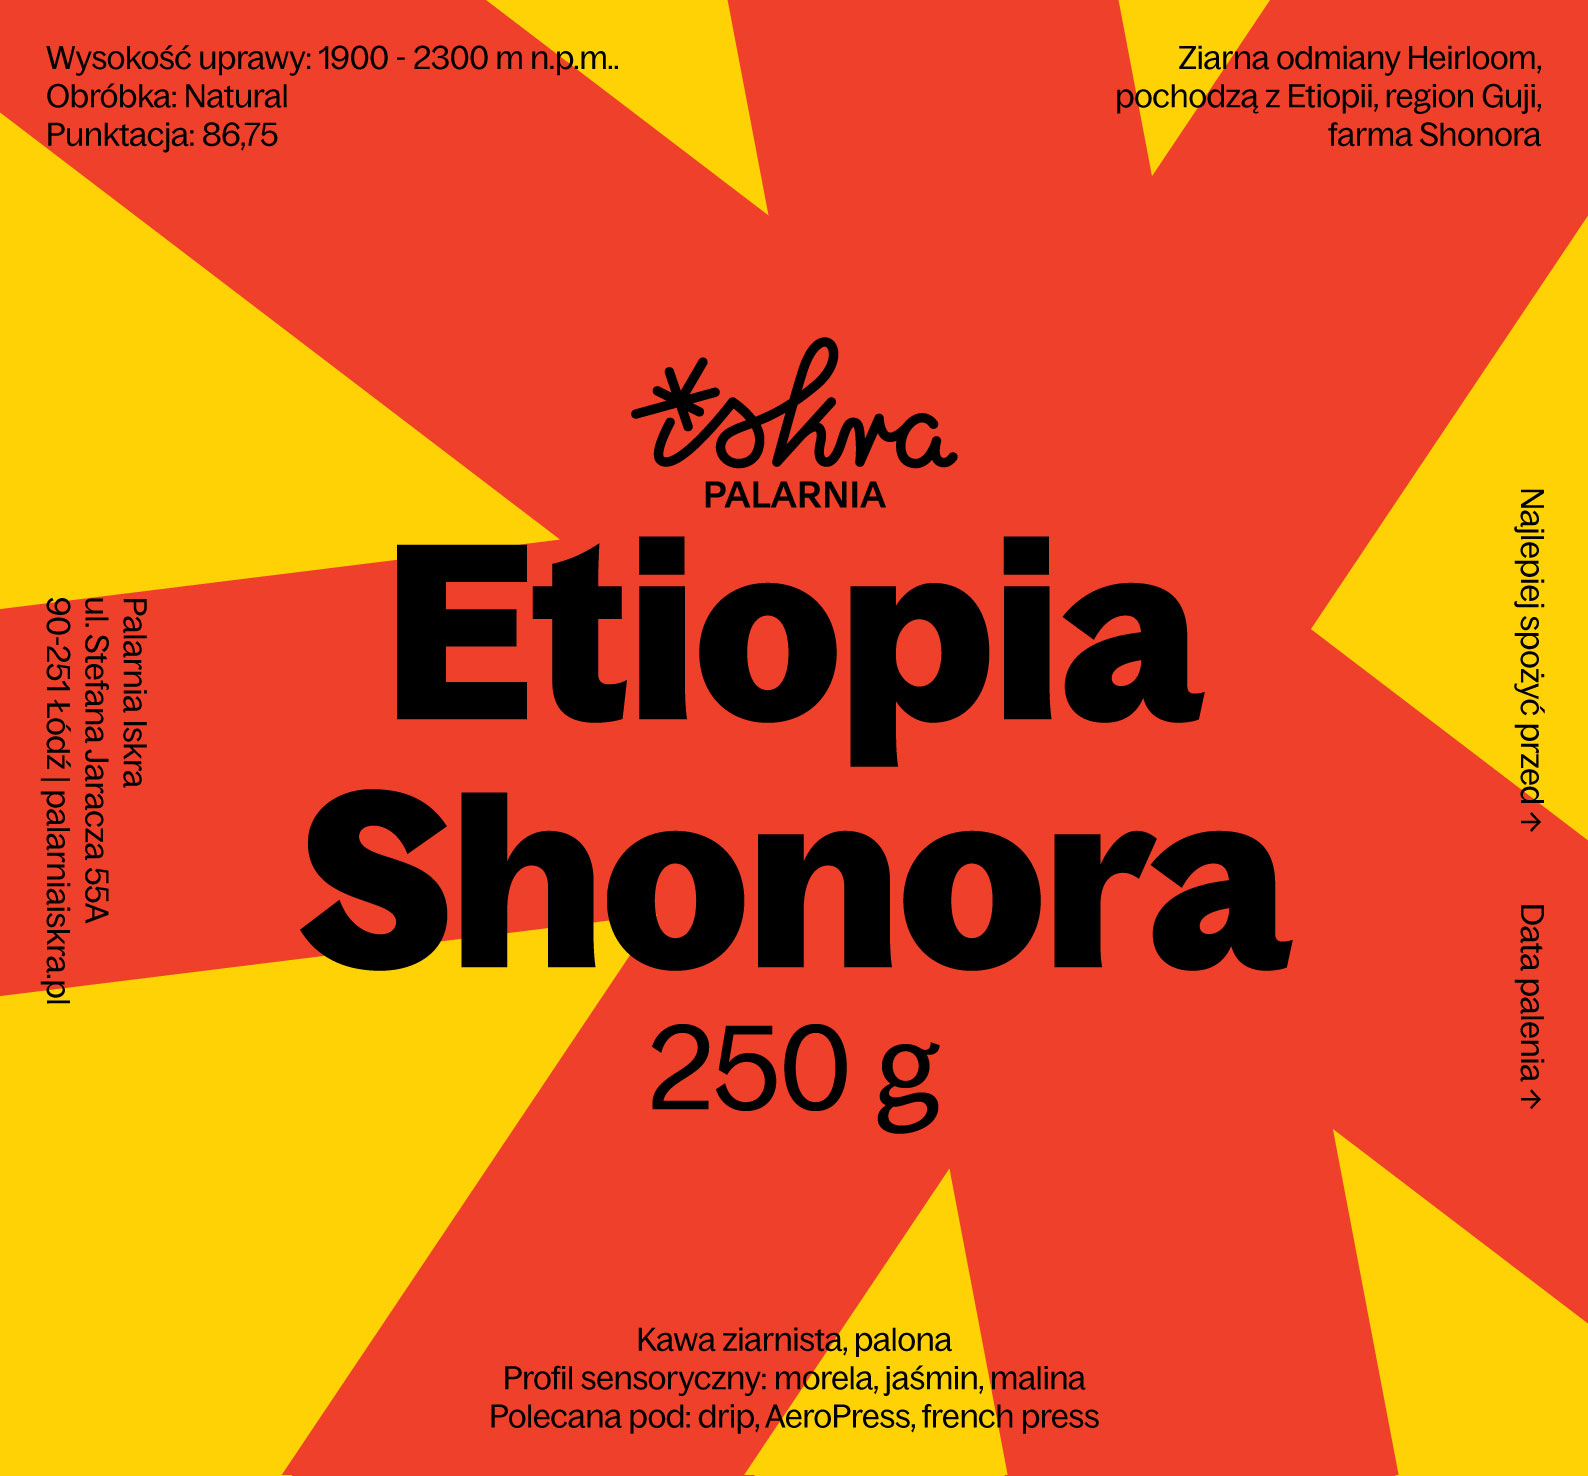 Etiopia Shonora